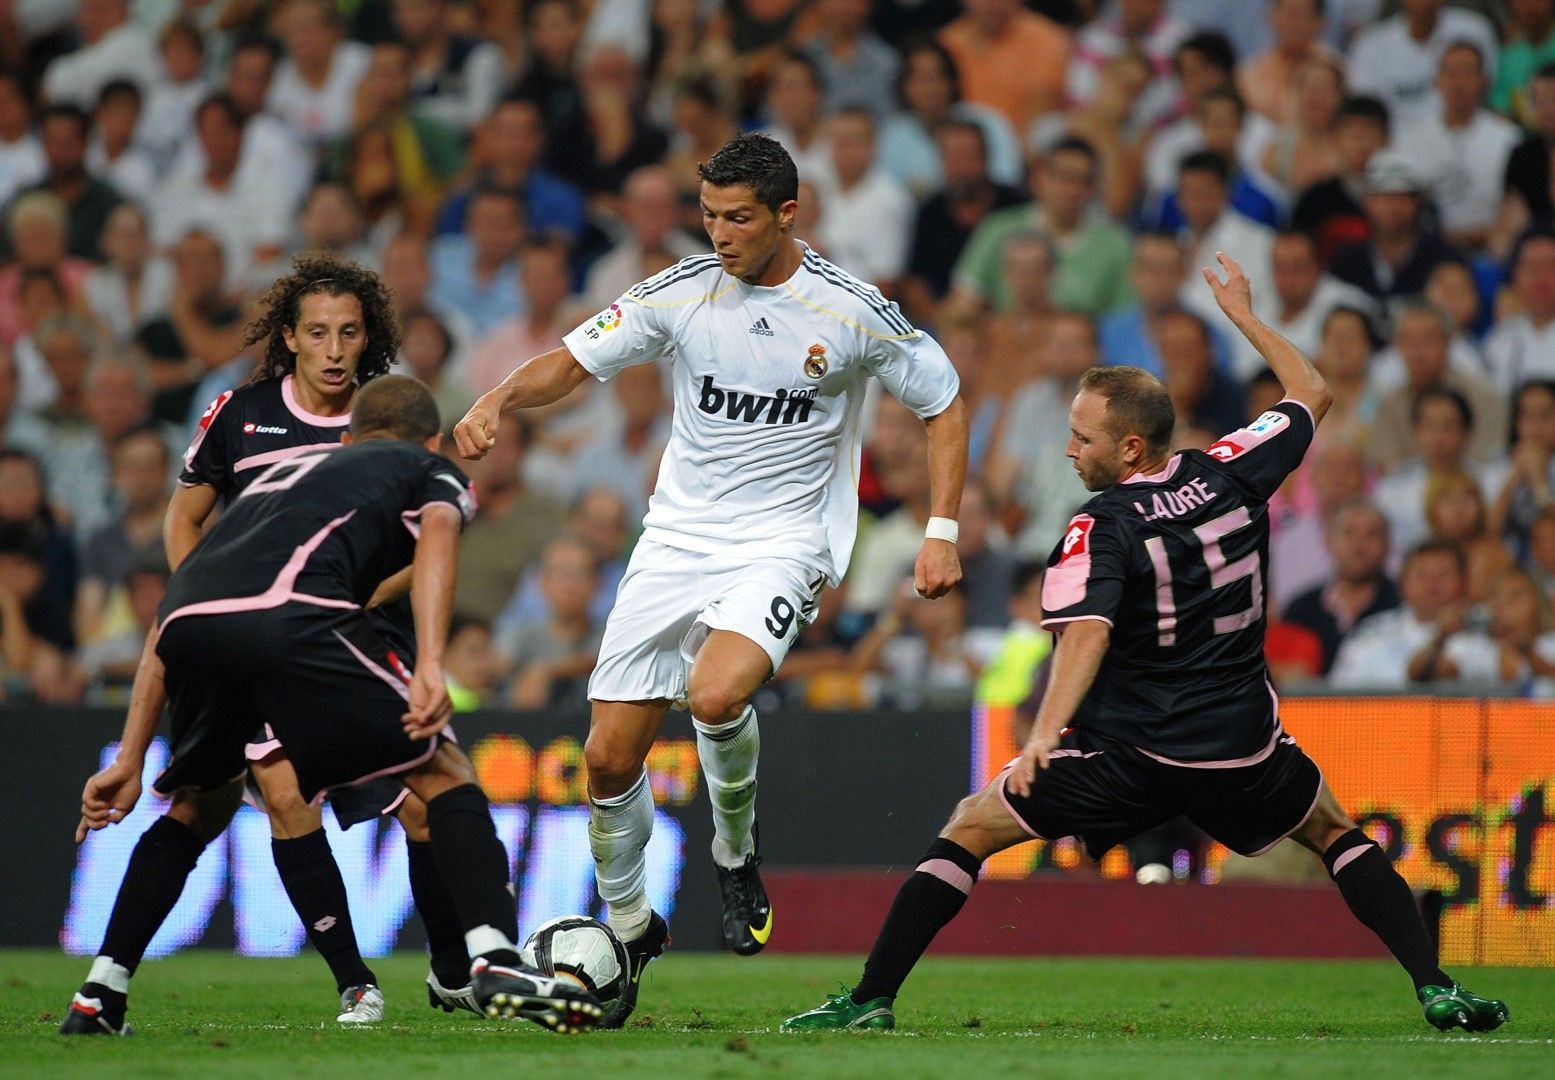 Първият му мач за "Реал" - 29.08.2009 срещу "Депортиво"